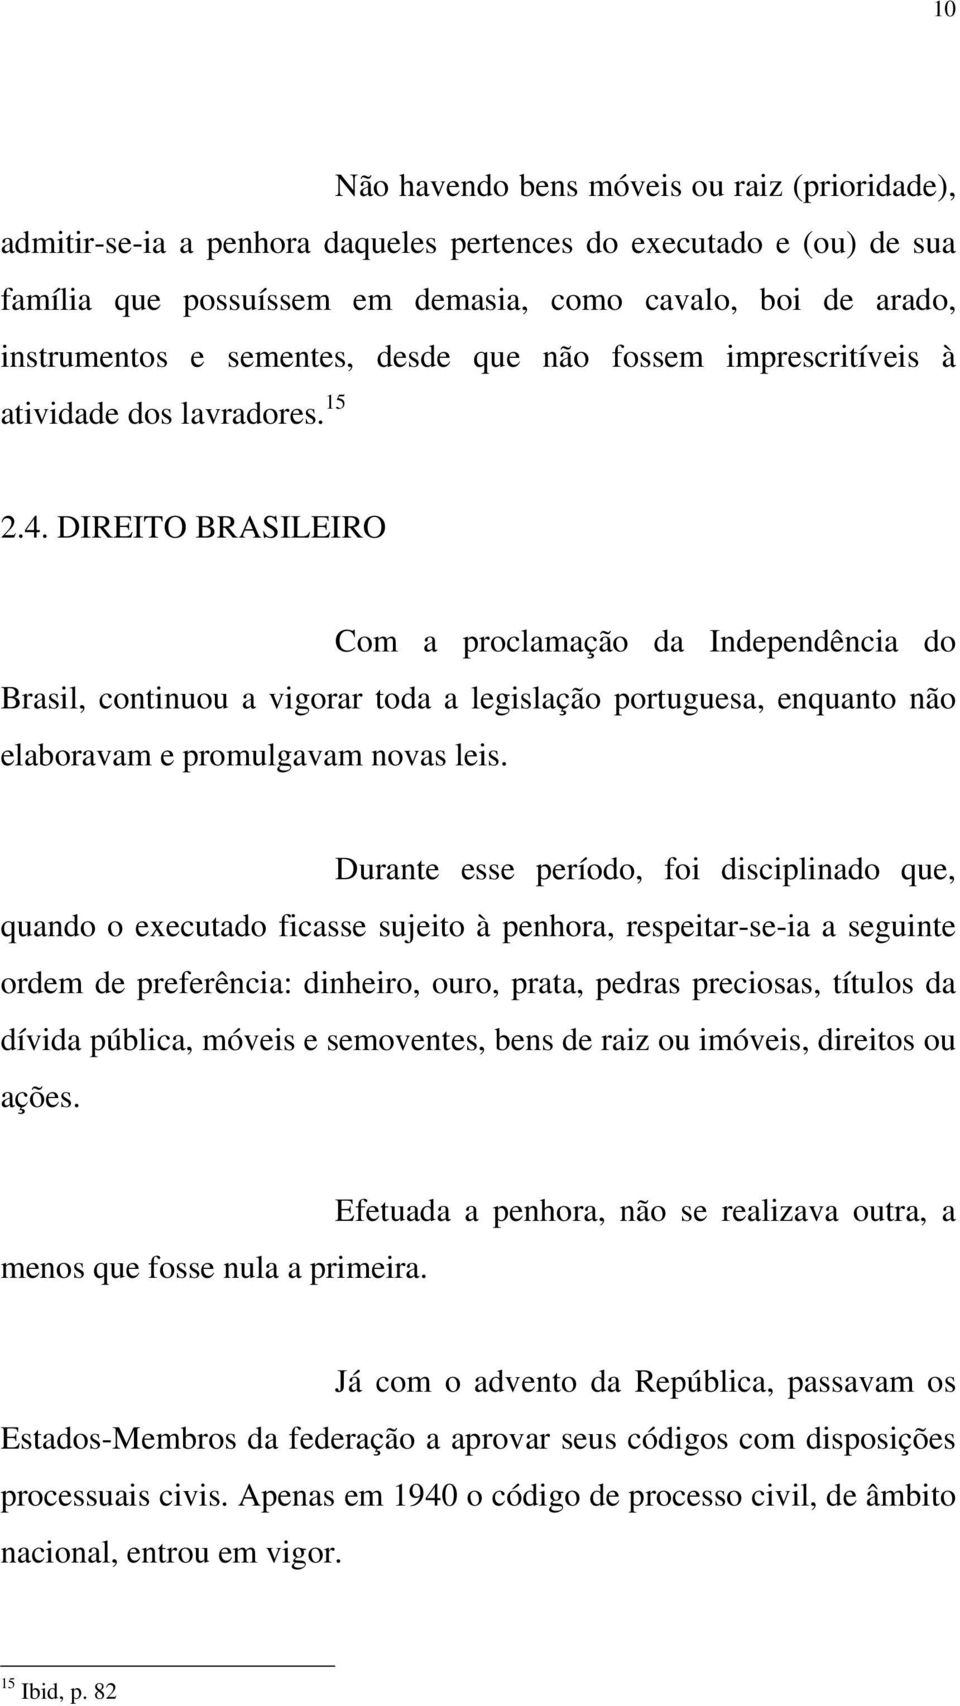 DIREITO BRASILEIRO Com a proclamação da Independência do Brasil, continuou a vigorar toda a legislação portuguesa, enquanto não elaboravam e promulgavam novas leis.